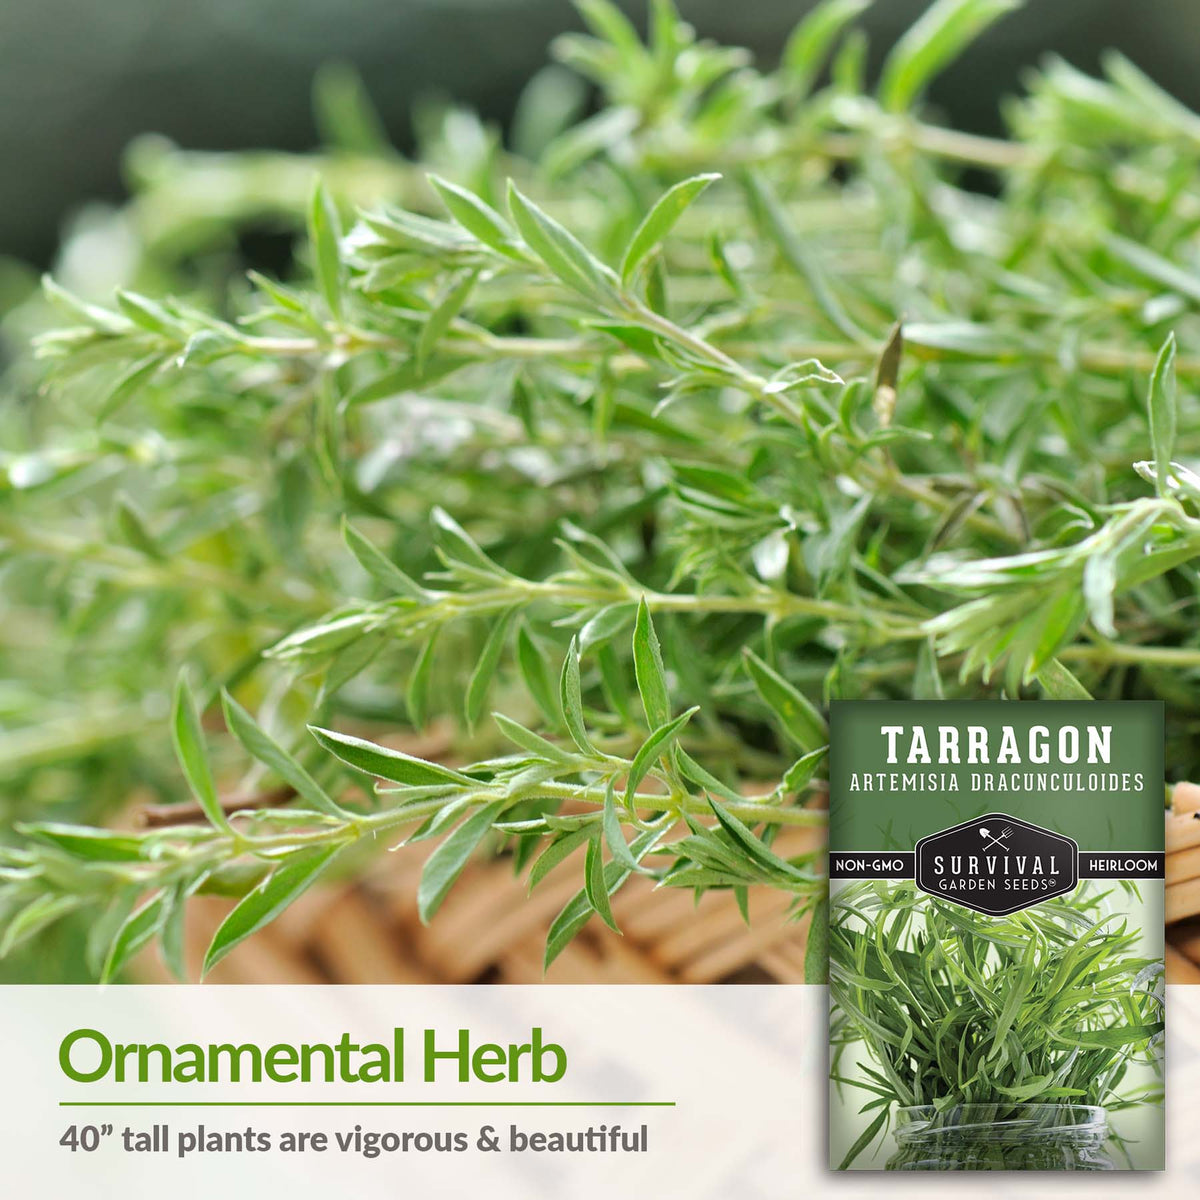 Tarragon is a beautiful ornamental herb